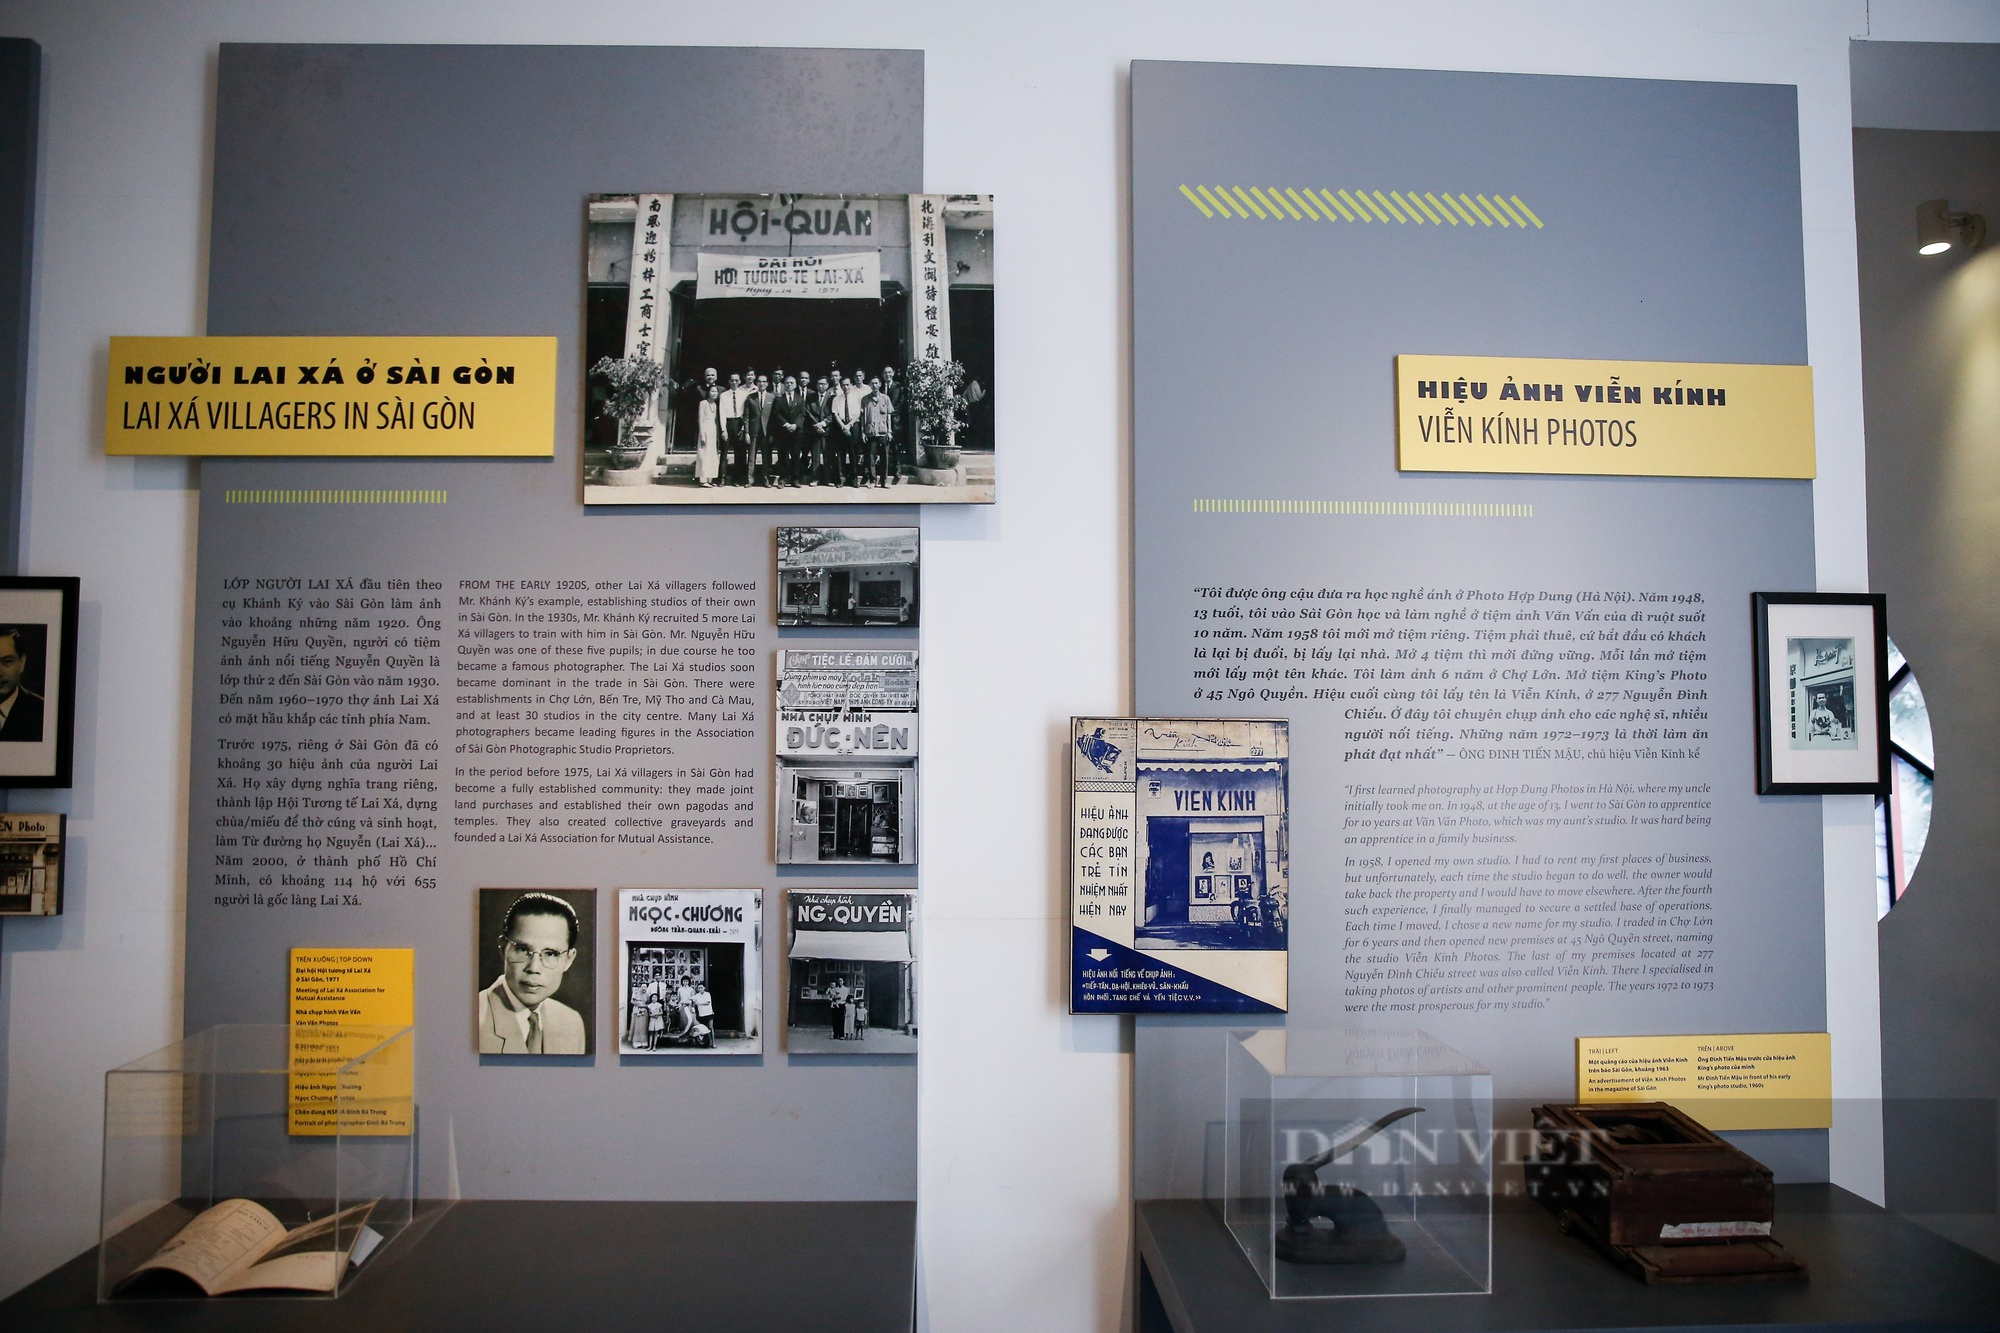 Khám phá bảo tàng nhiếp ảnh đầu tiên tại Hà Nội do dân làng góp tiền xây dựng - Ảnh 8.